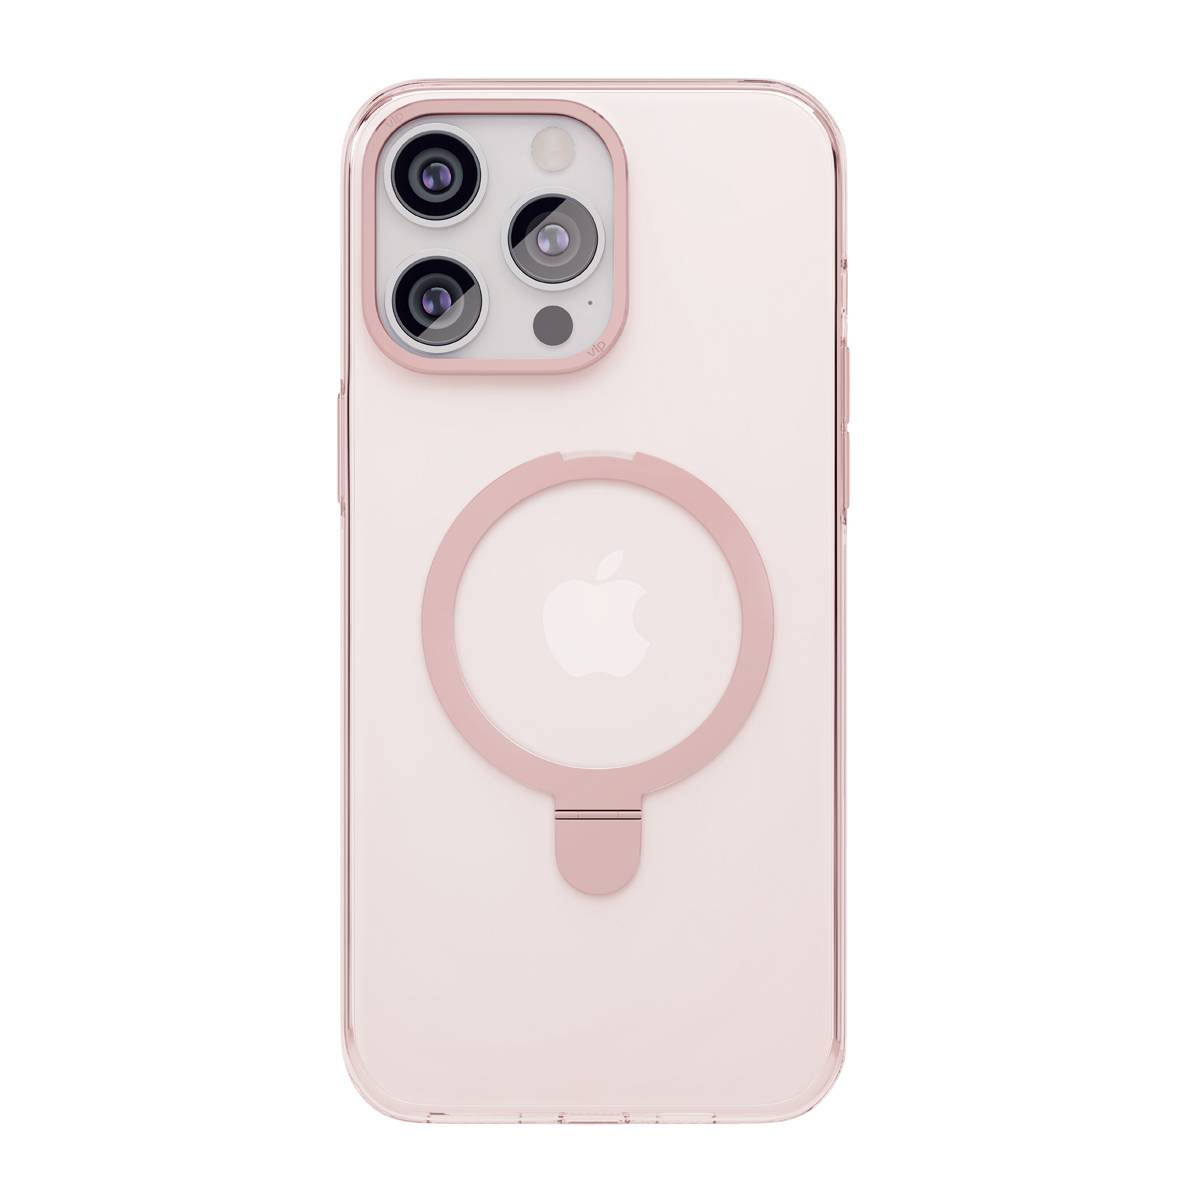 Фото — Чехол для смартфона "vlp" Ring Case с MagSafe подставкой для iPhone 15 Pro Max, розовый